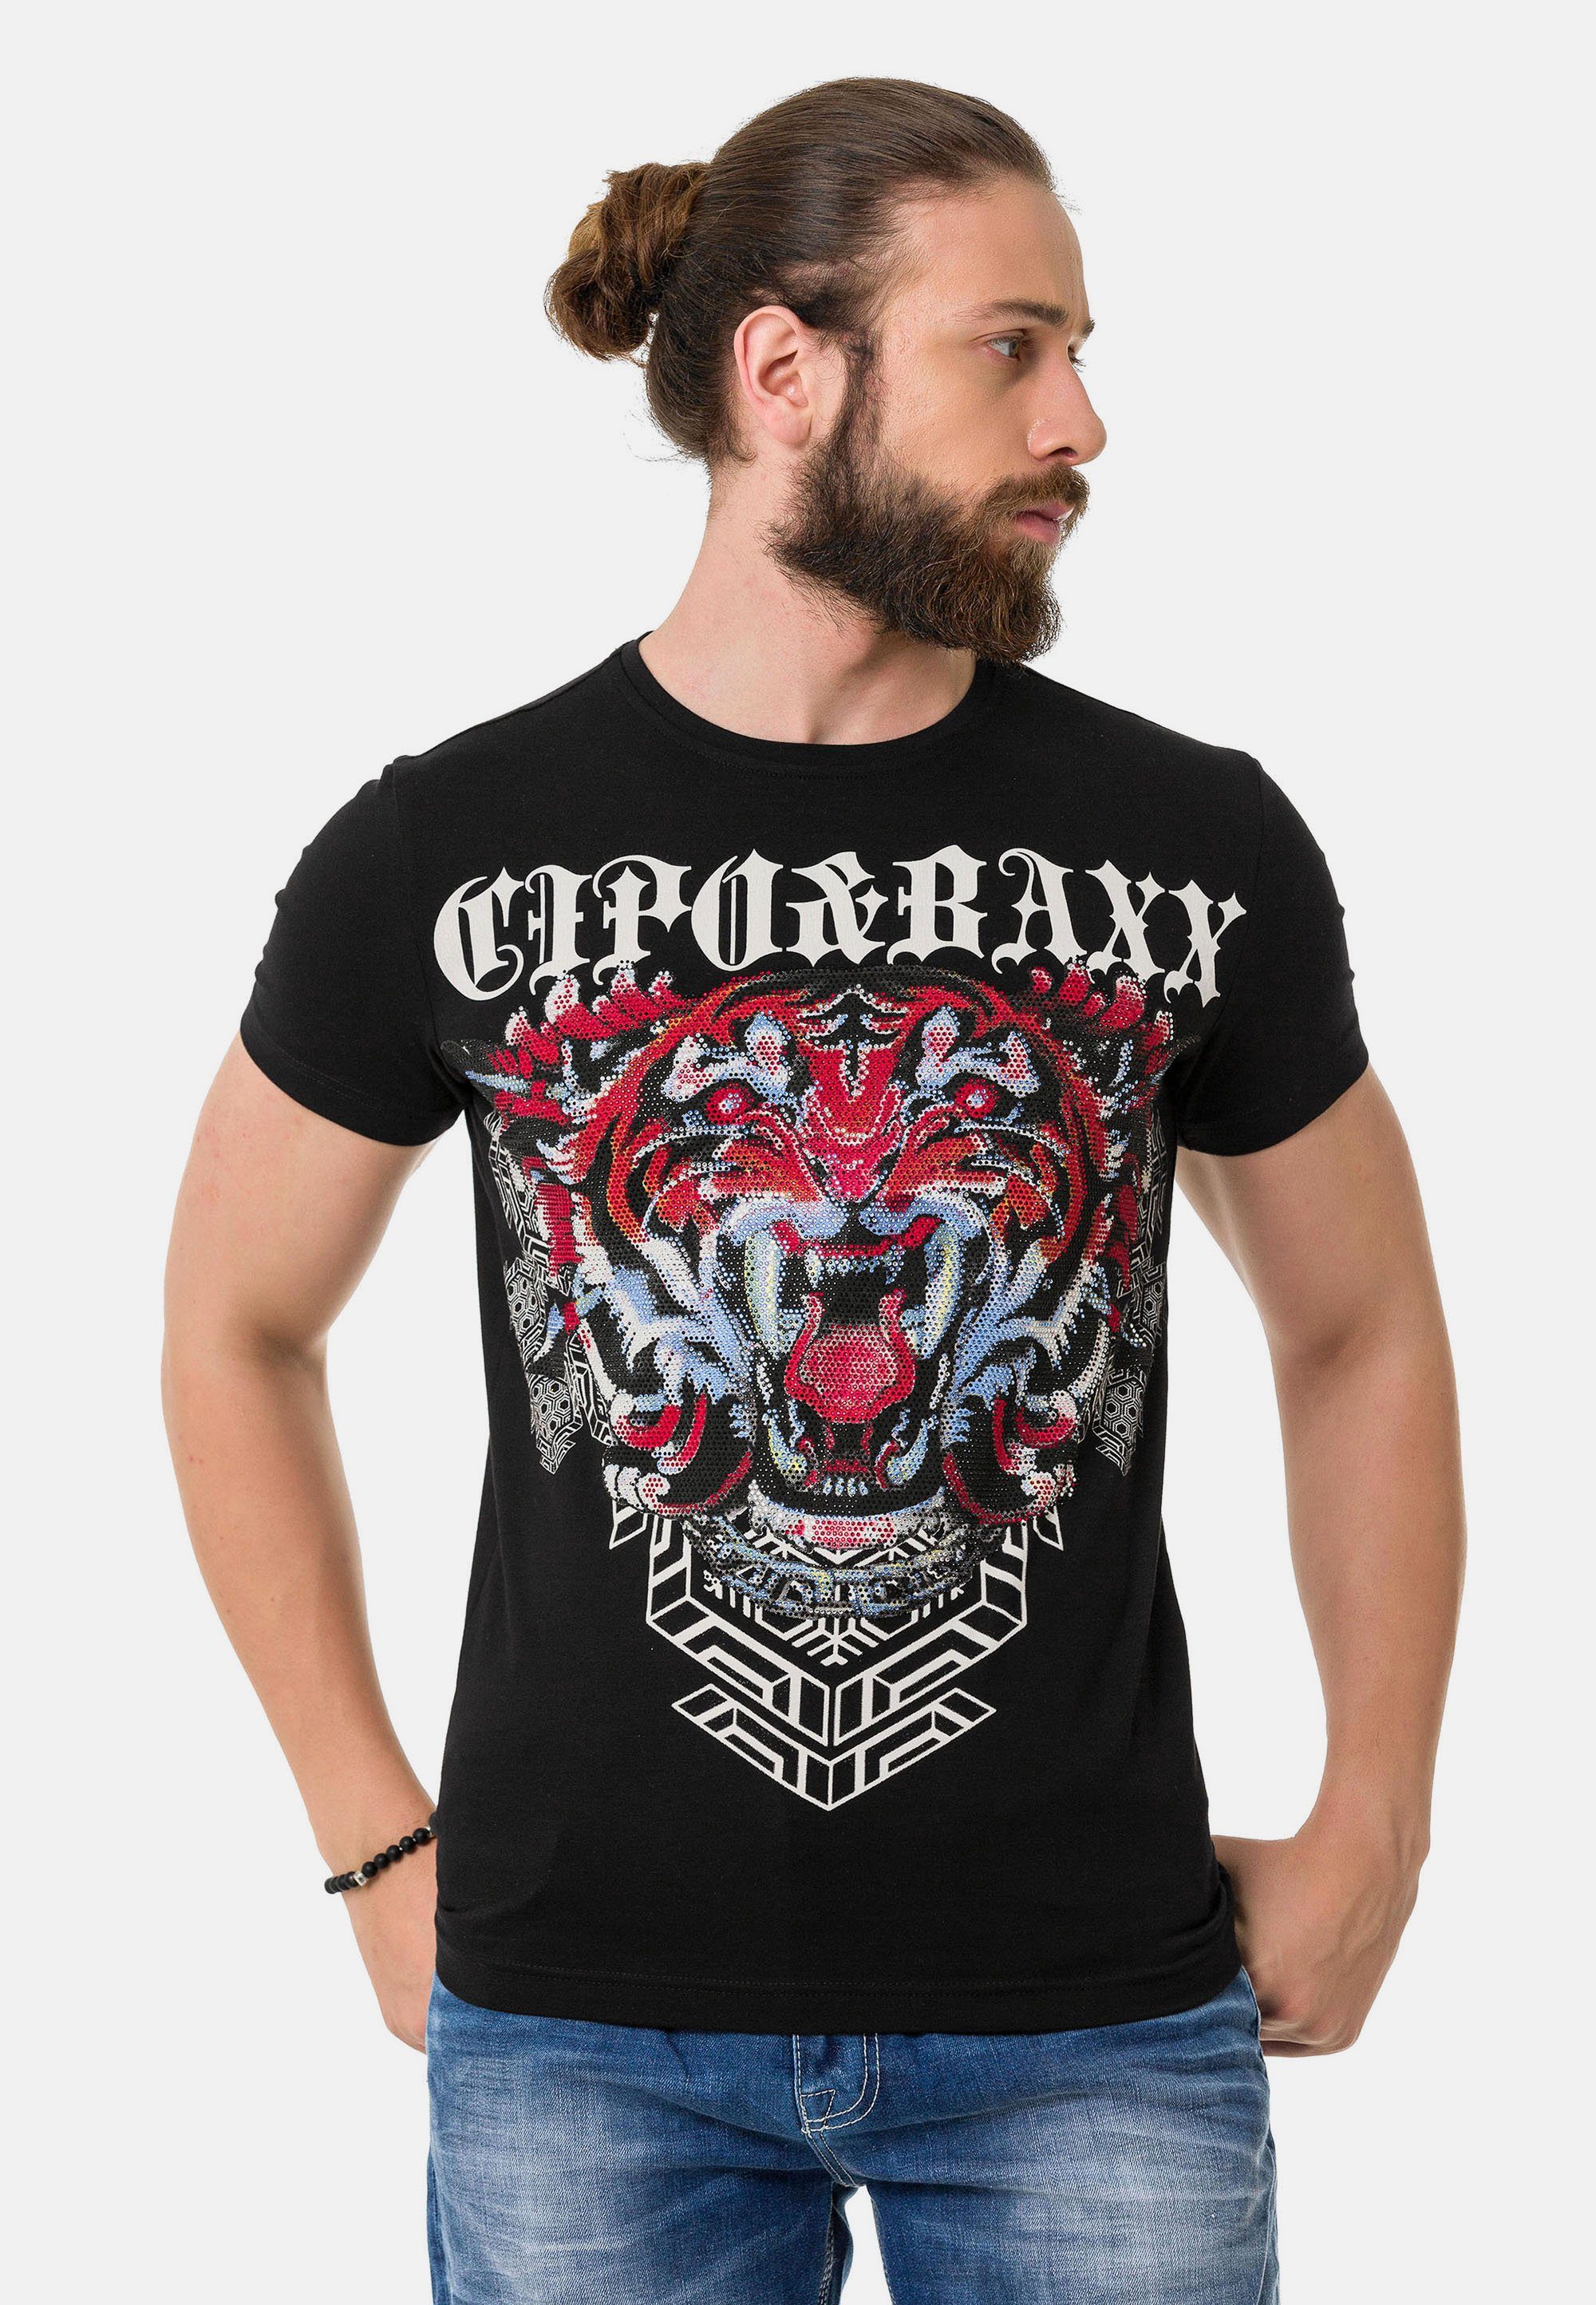 & Design Cipo Baxx T-Shirt coolem in schwarz